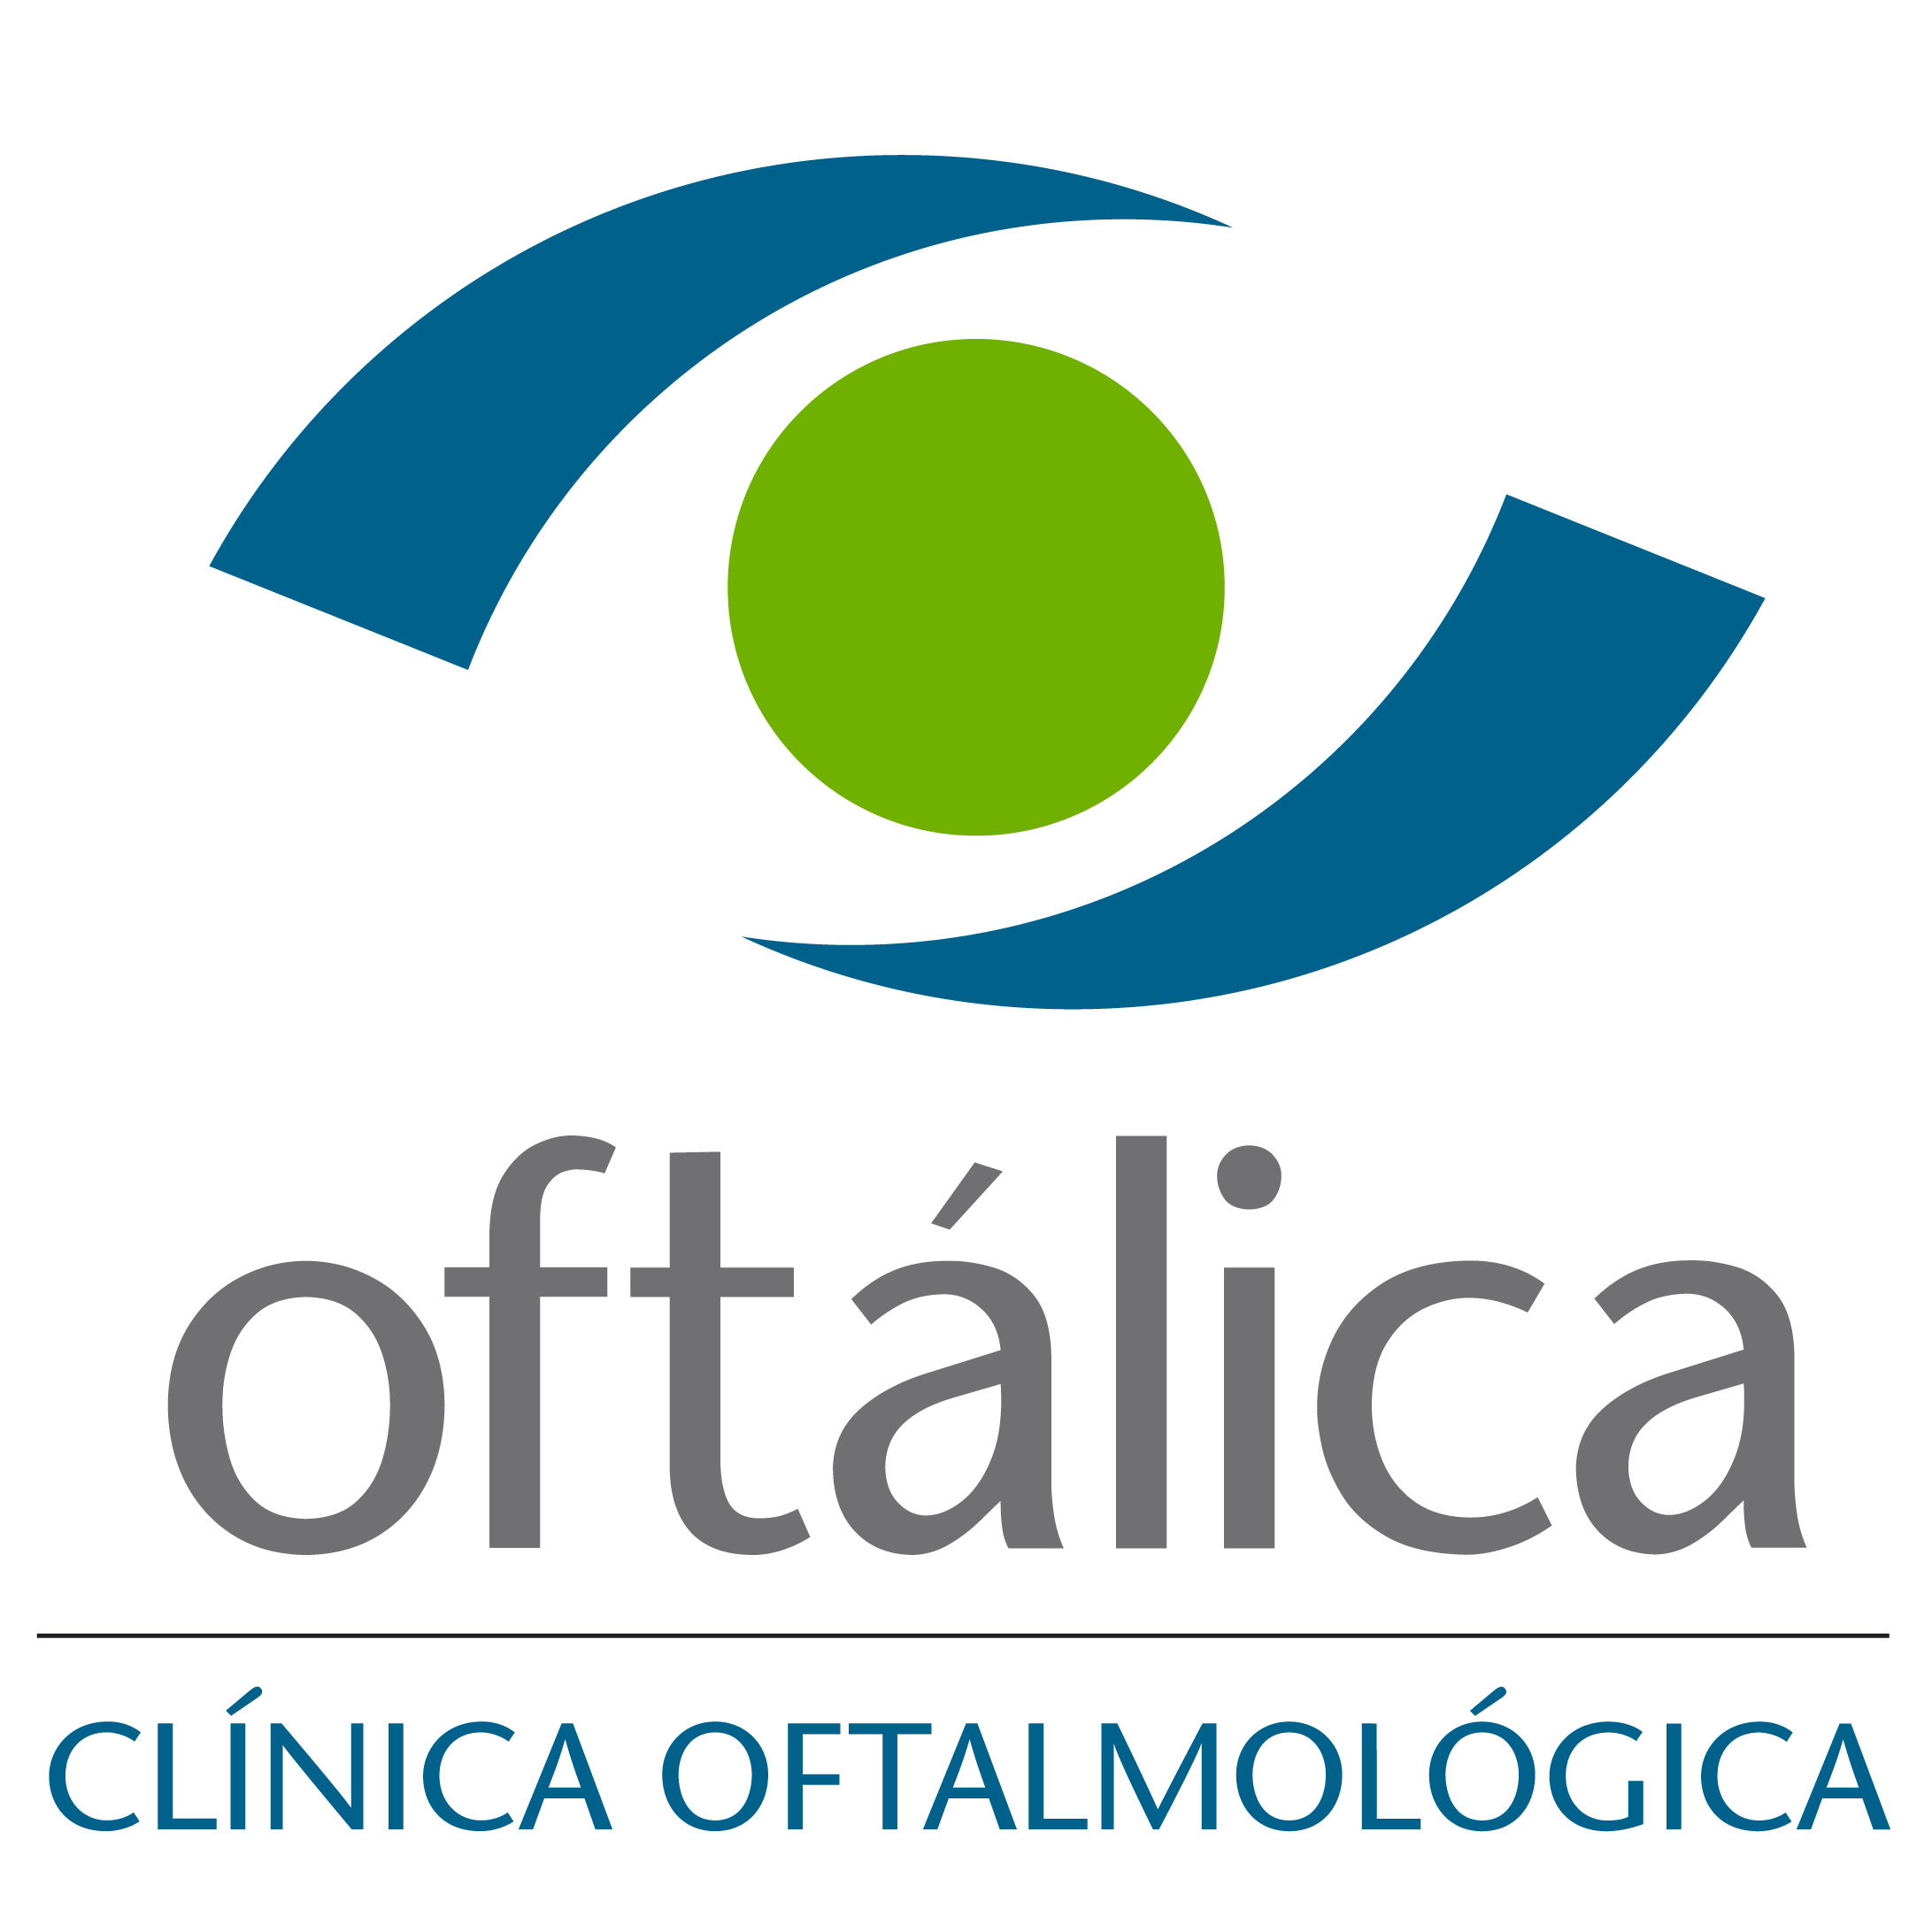 Logotipo de la clínica Oftálica